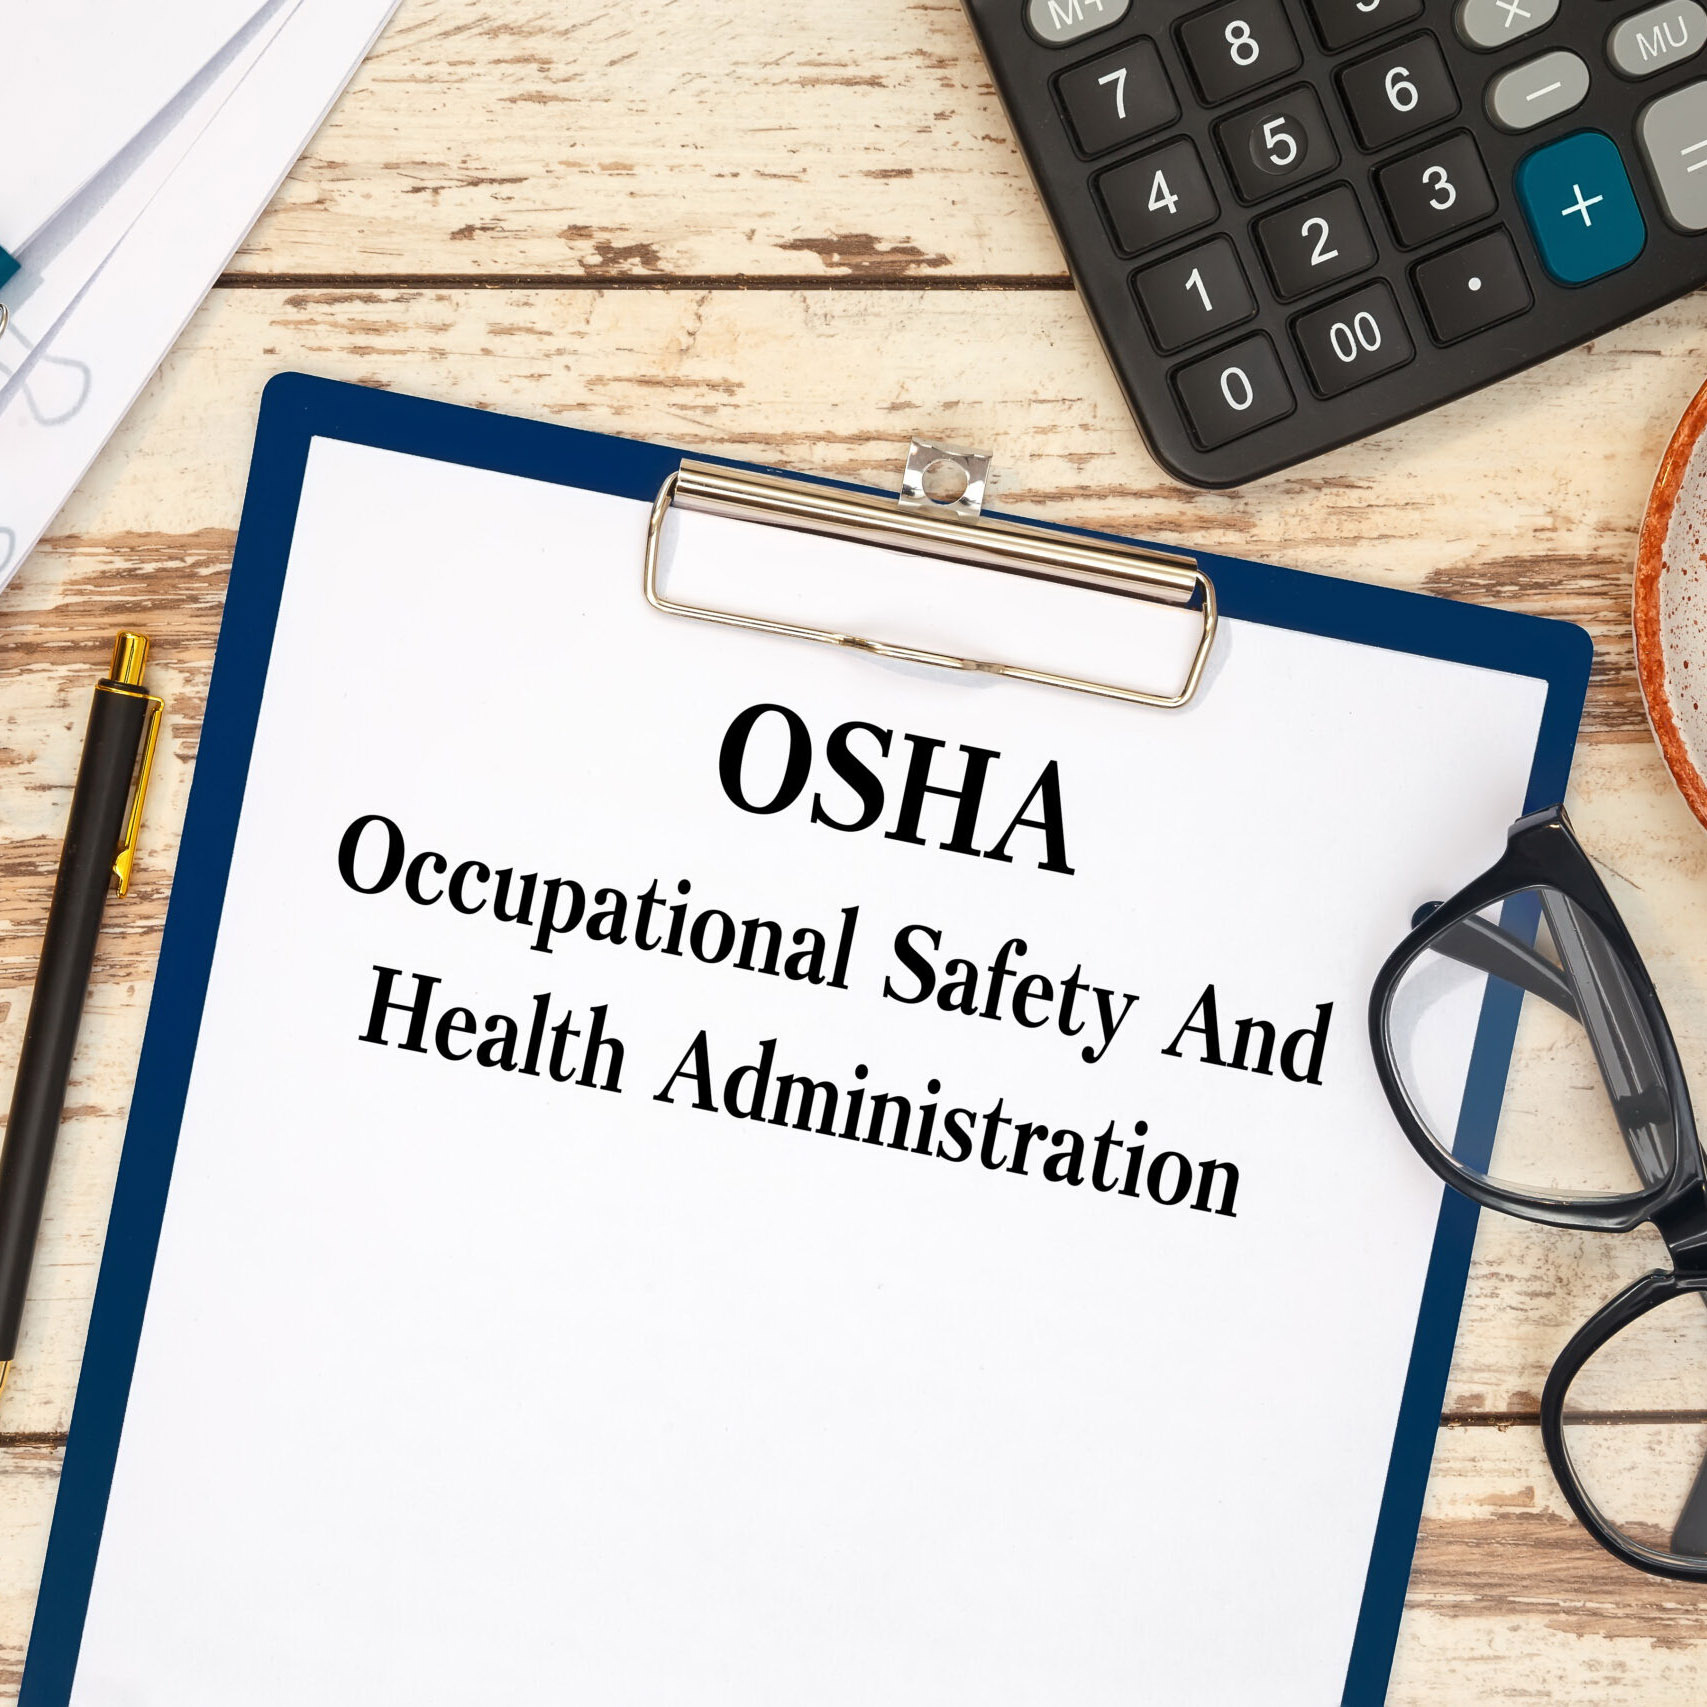 المنظومة المتكاملة للسلامة والصحة المهنية وفق مُتطلبات ومعايير الأوشا - OSHA